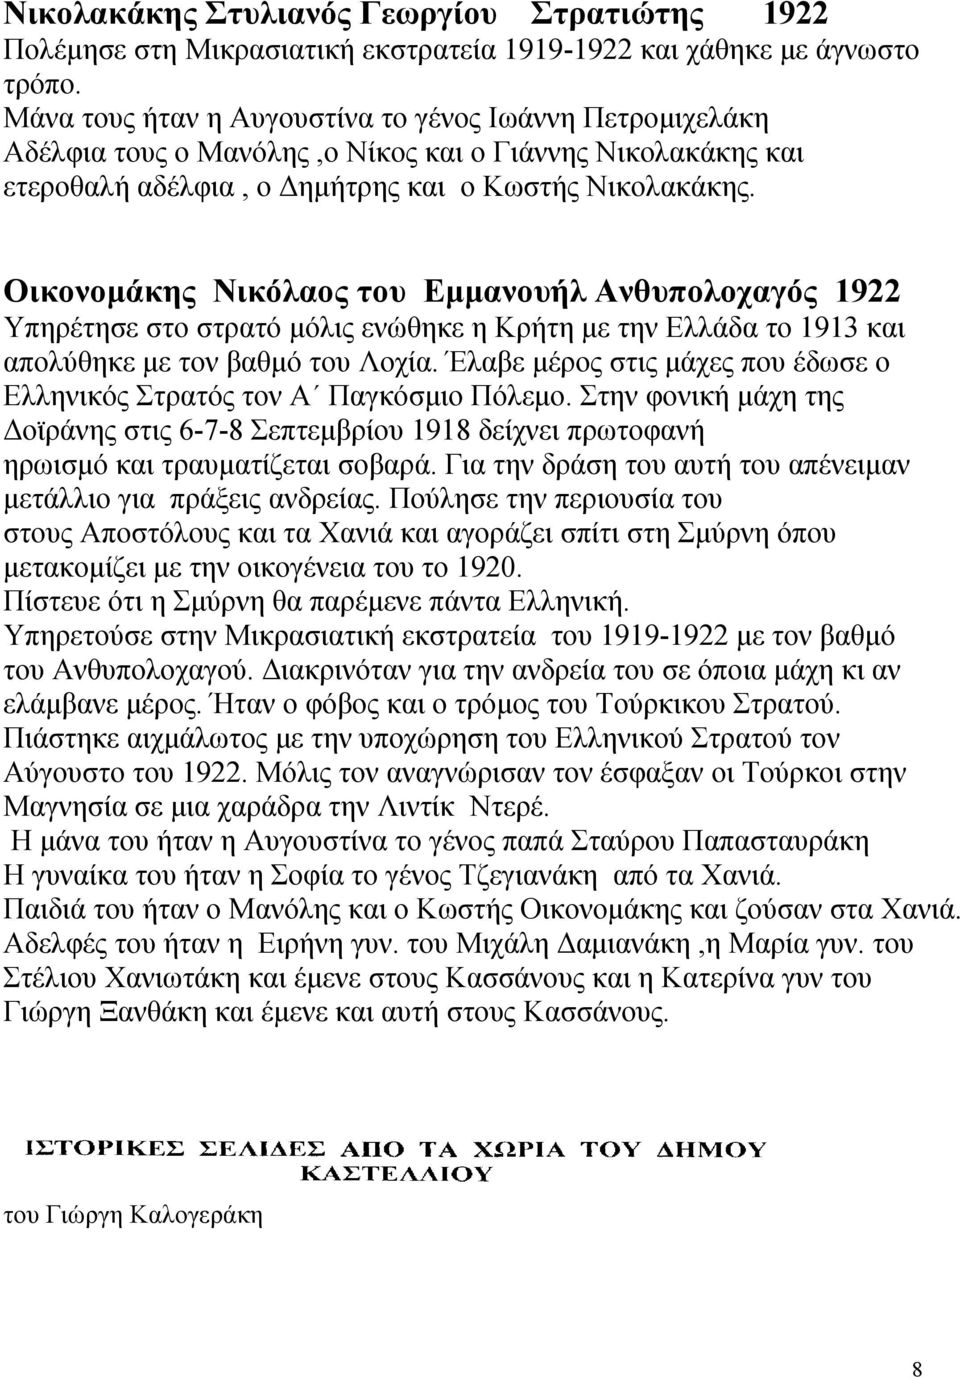 Οικονομάκης Νικόλαος του Εμμανουήλ Ανθυπολοχαγός 1922 Υπηρέτησε στο στρατό μόλις ενώθηκε η Κρήτη με την Ελλάδα το 1913 και απολύθηκε με τον βαθμό του Λοχία.